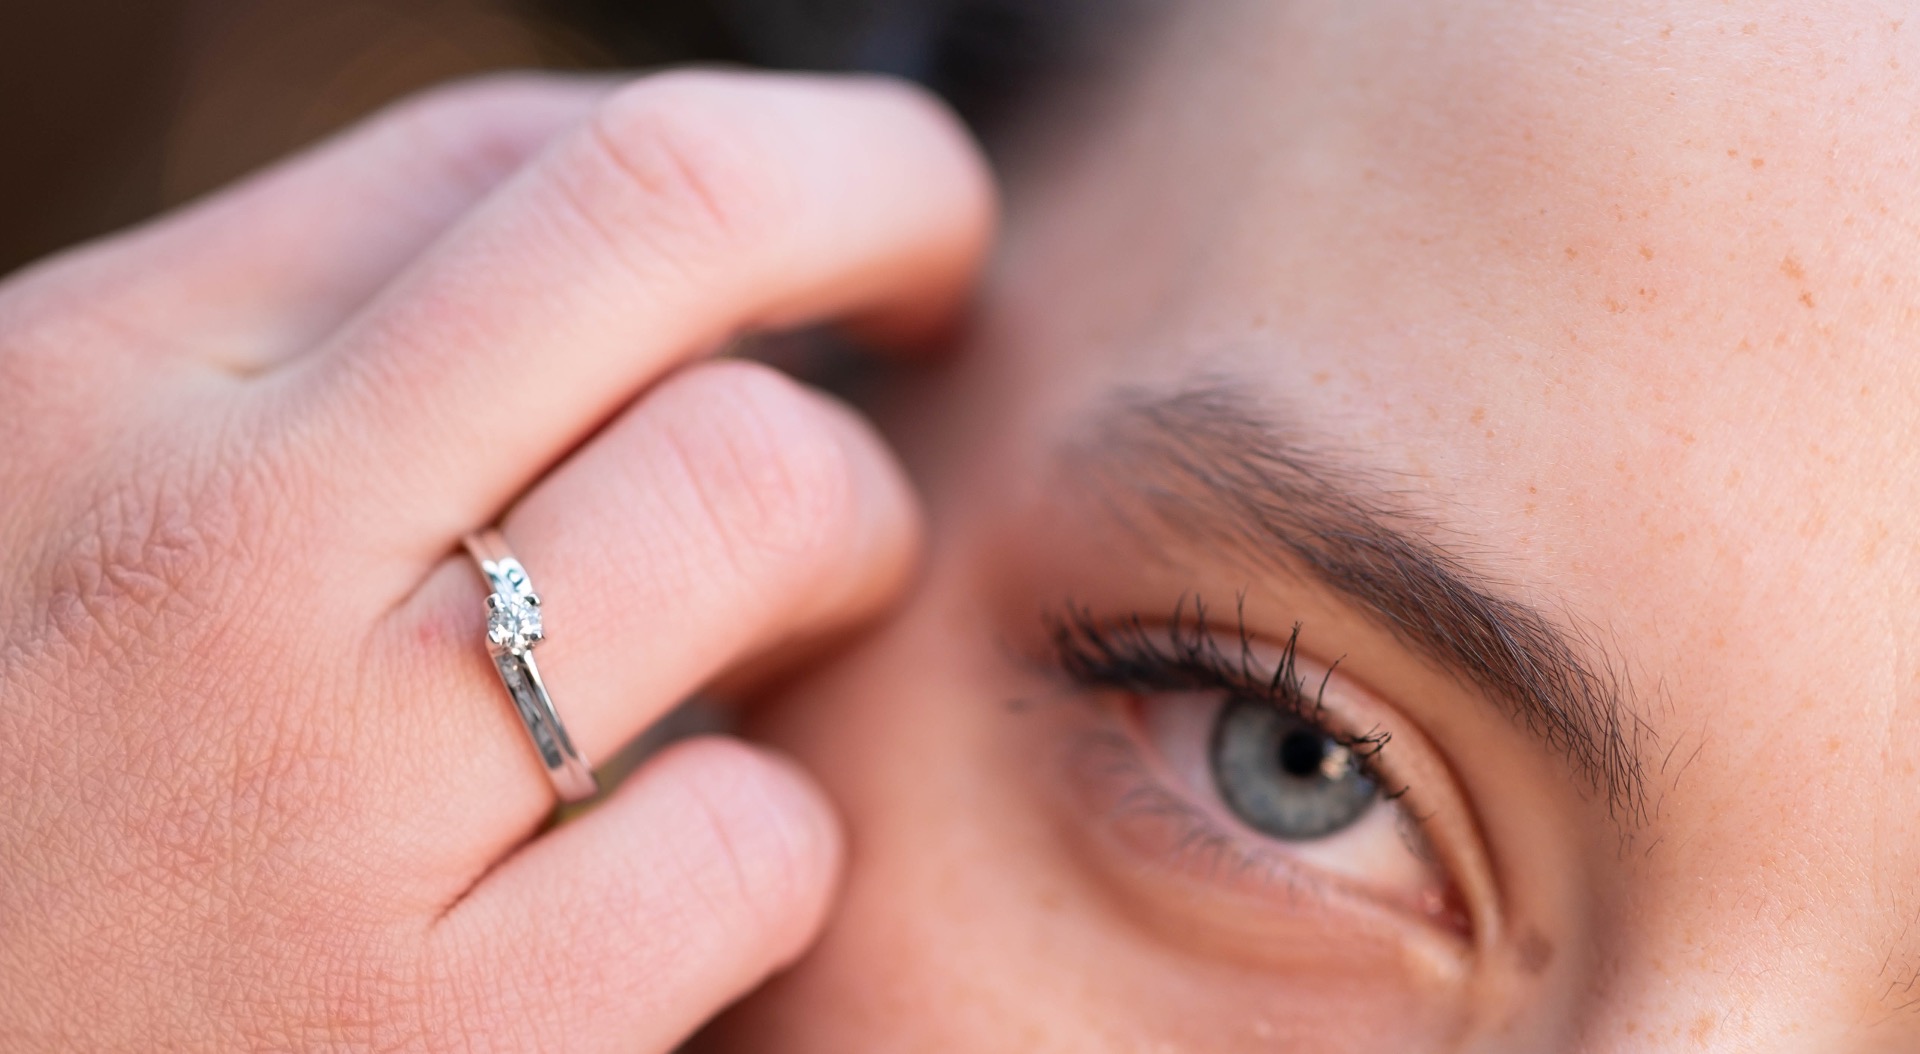 Златен годежен пръстен с диамант - 0,158 ct.